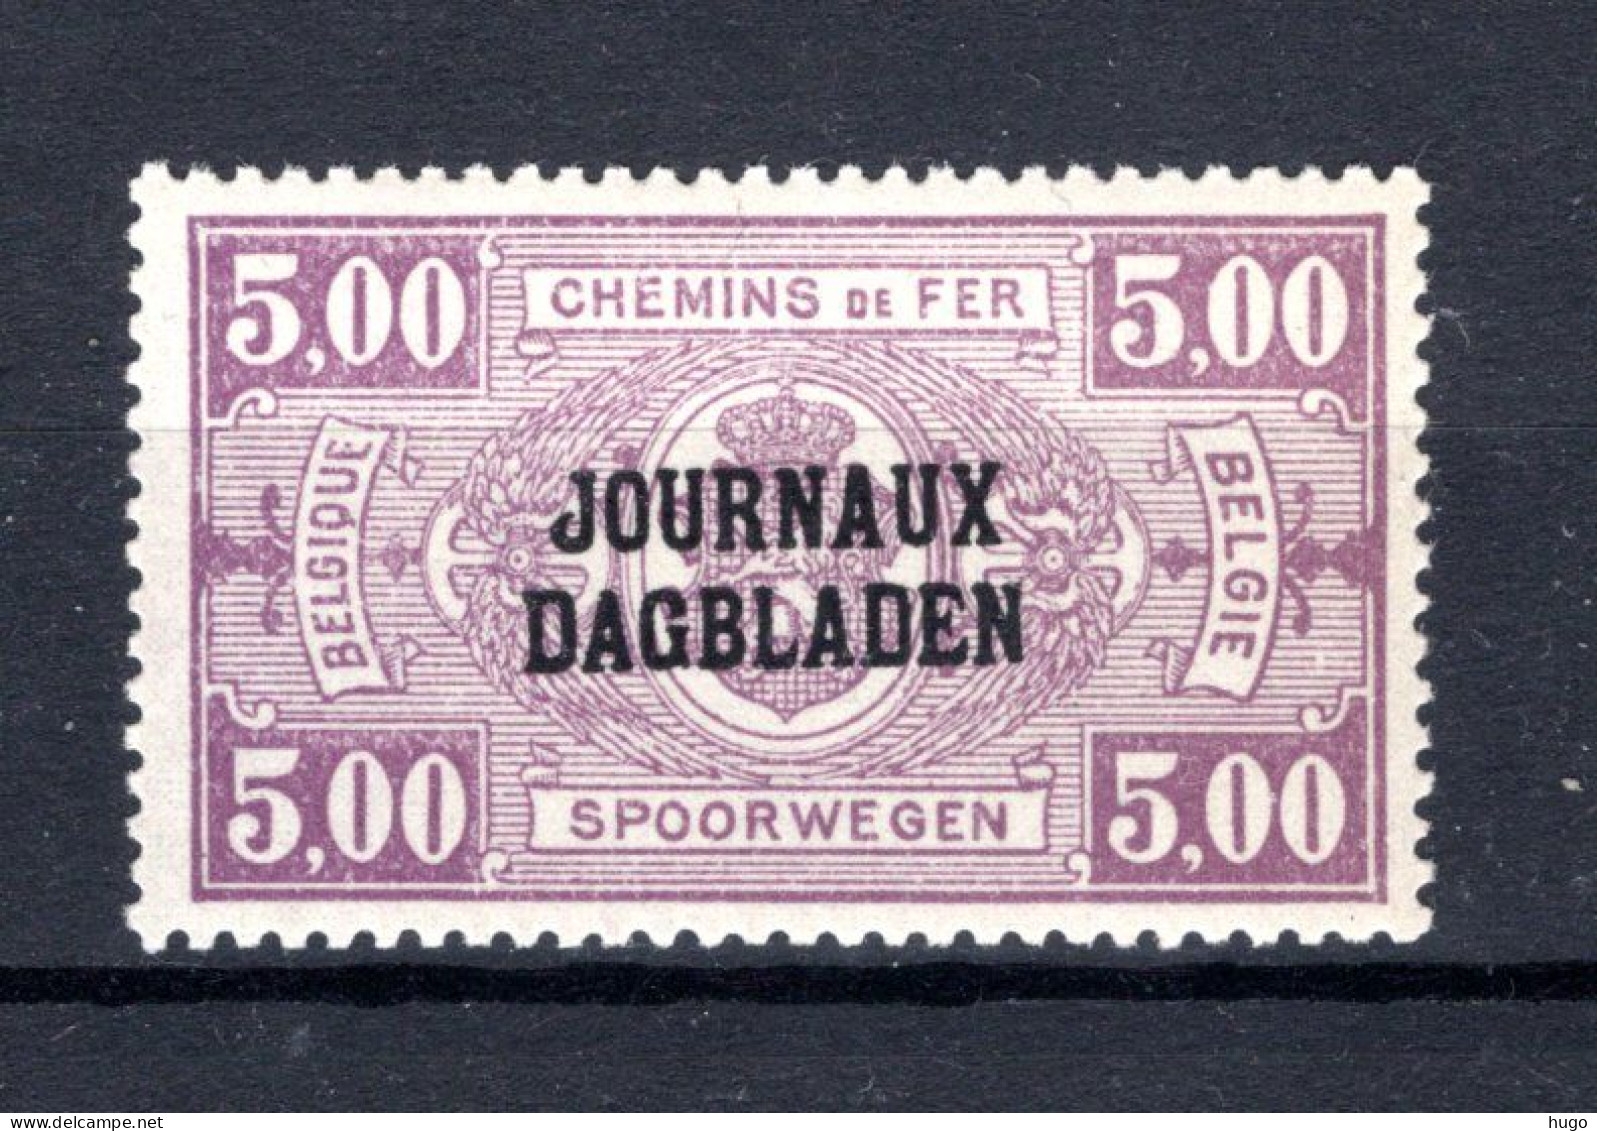 JO30 MNH** 1929 - Type I, R Staat Boven BL - Sot - Journaux [JO]